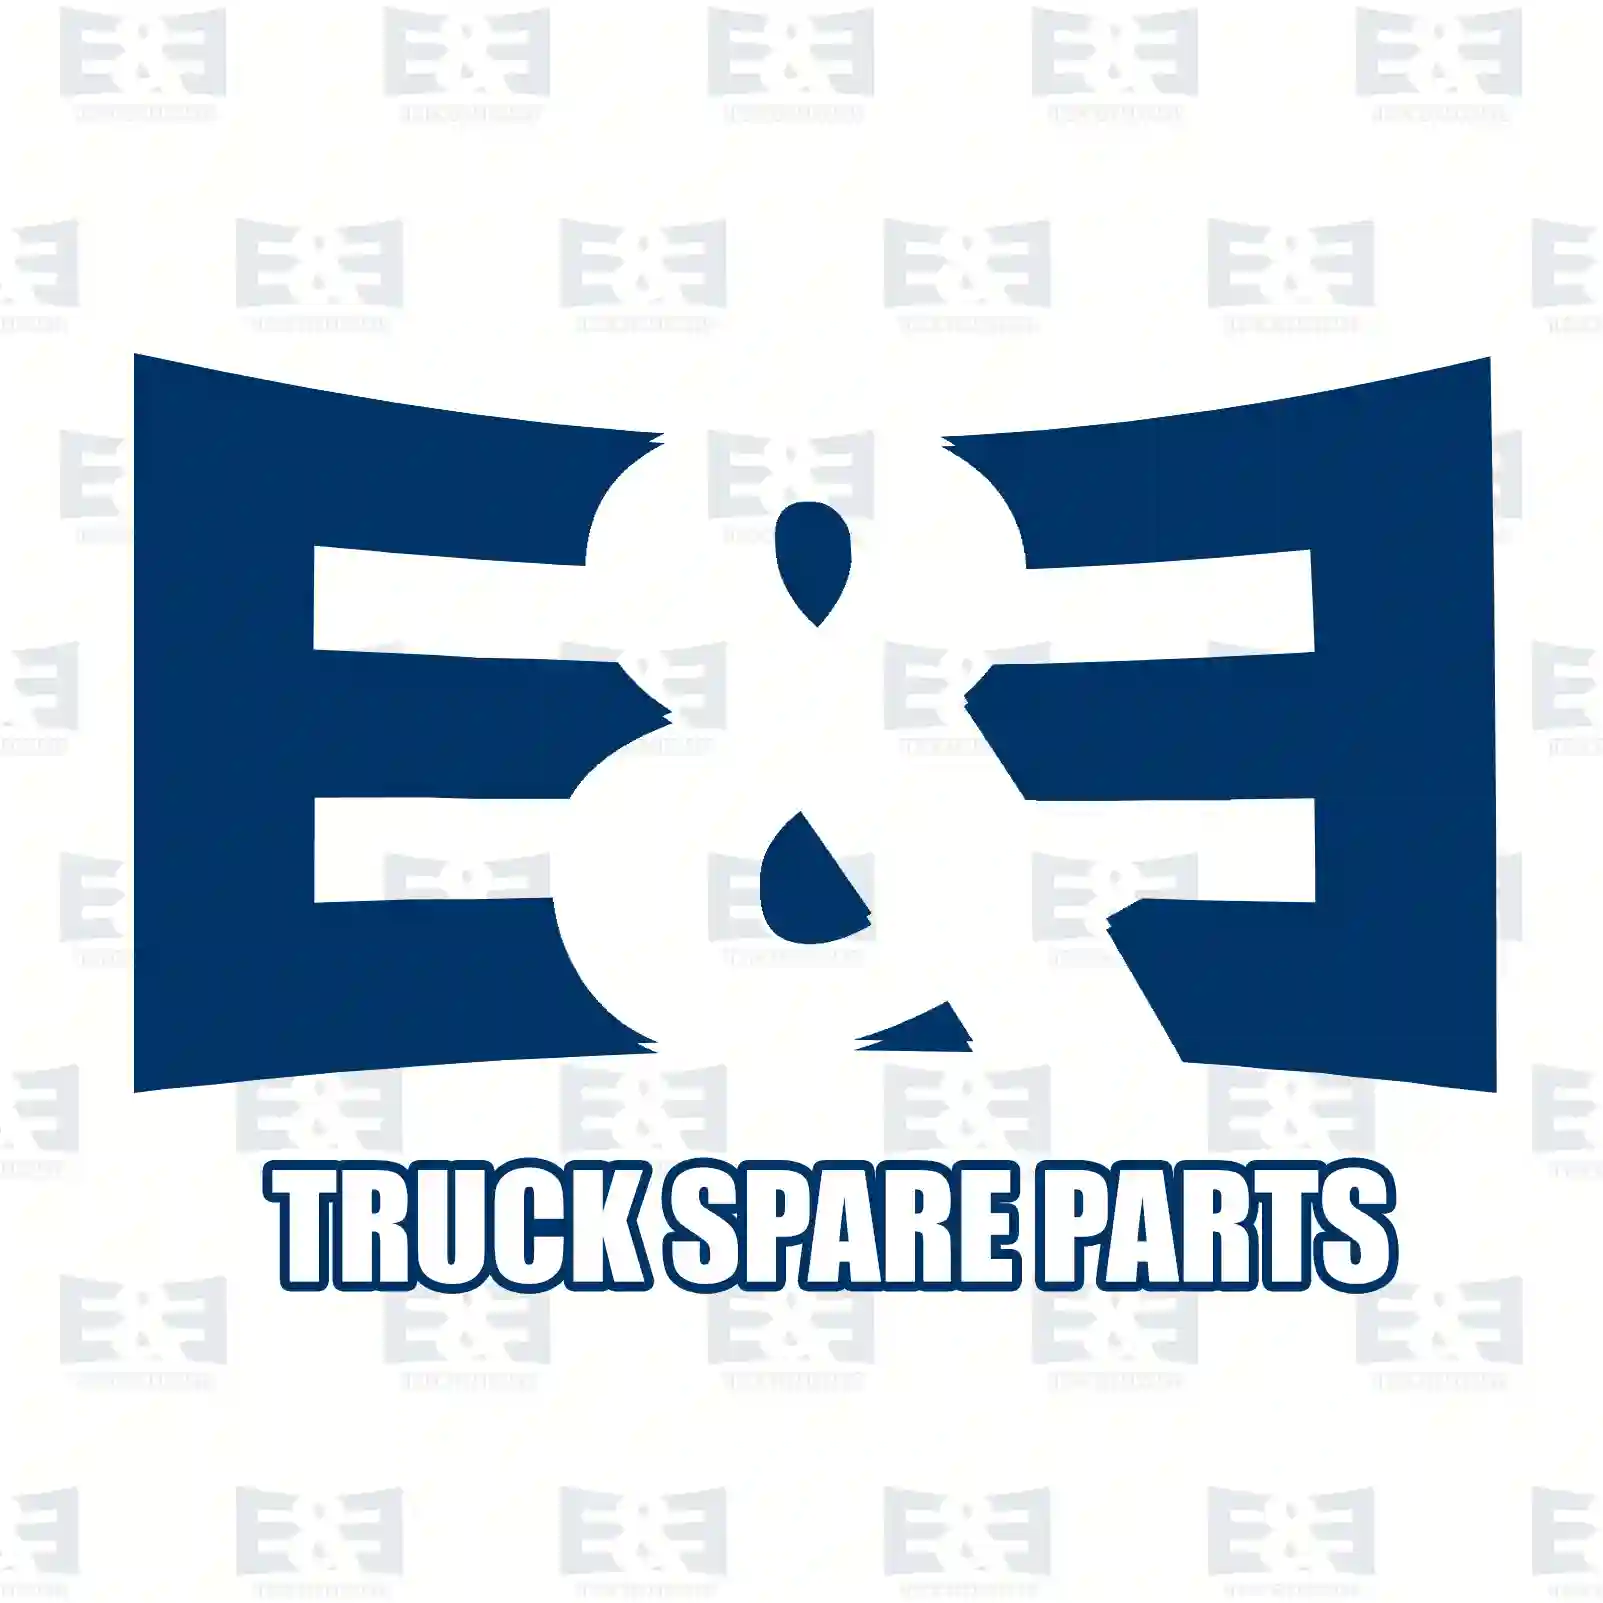 Spring washer, 2E2286136, 06160400213, 06160430213, 06160440213, 81907110467, 87160481321, A0021792611, A0035353200, A0038113287, N1011054716, 941911, ZG40307-0008 ||  2E2286136 E&E Truck Spare Parts | Truck Spare Parts, Auotomotive Spare Parts Spring washer, 2E2286136, 06160400213, 06160430213, 06160440213, 81907110467, 87160481321, A0021792611, A0035353200, A0038113287, N1011054716, 941911, ZG40307-0008 ||  2E2286136 E&E Truck Spare Parts | Truck Spare Parts, Auotomotive Spare Parts